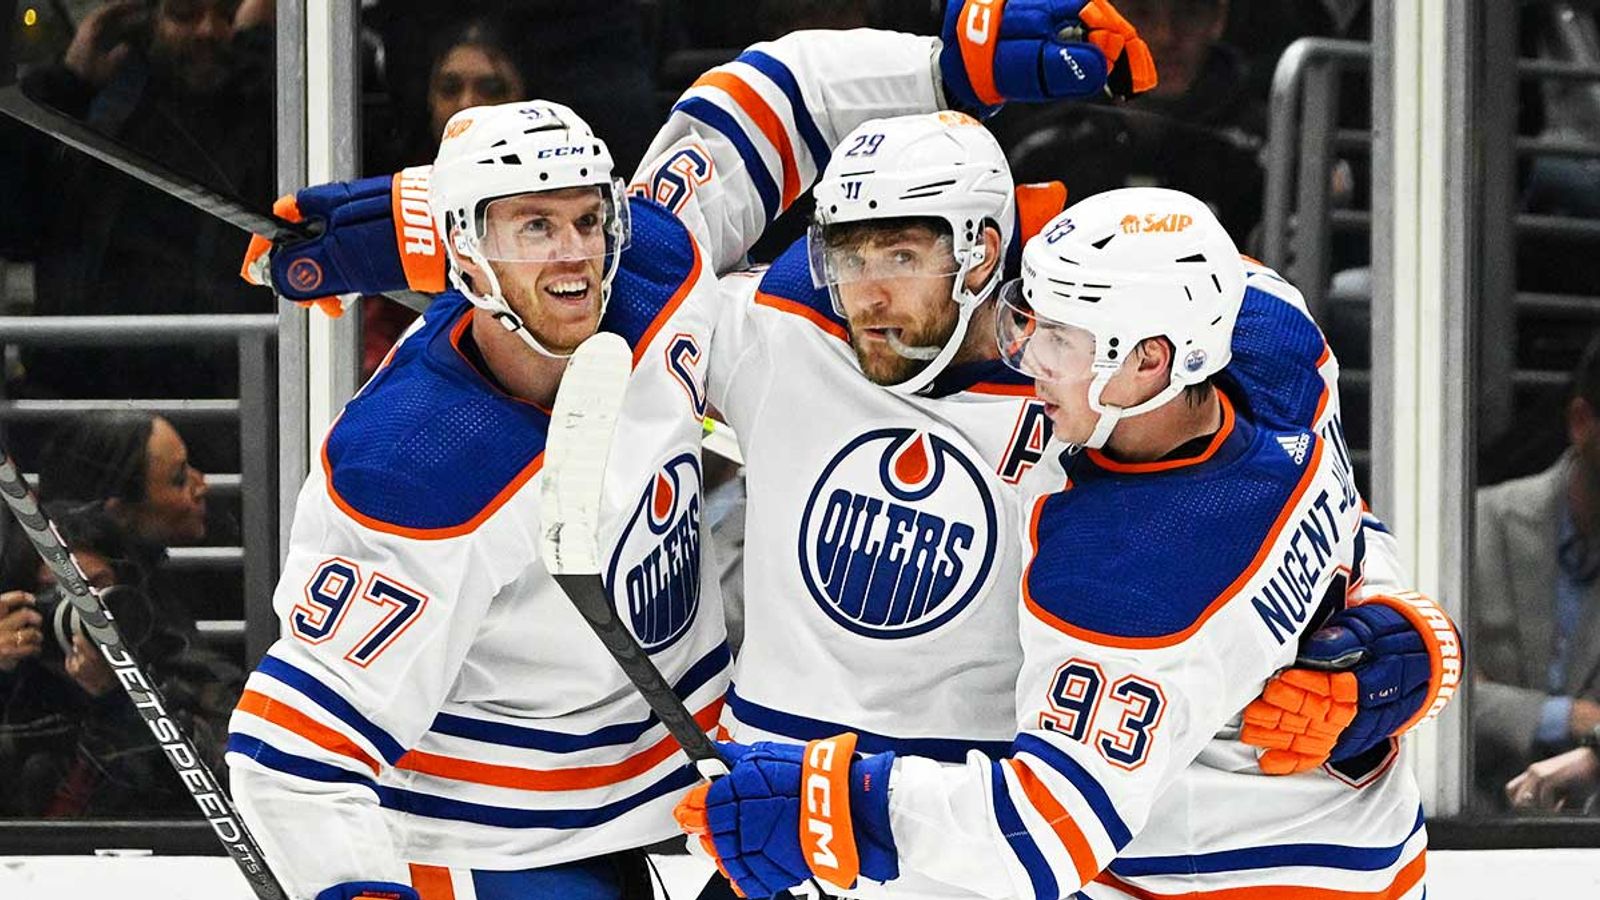 NHL Leon Draisaitl und die Edmonton Oilers feiern sechsten Sieg in Folge NHL News Sky Sport